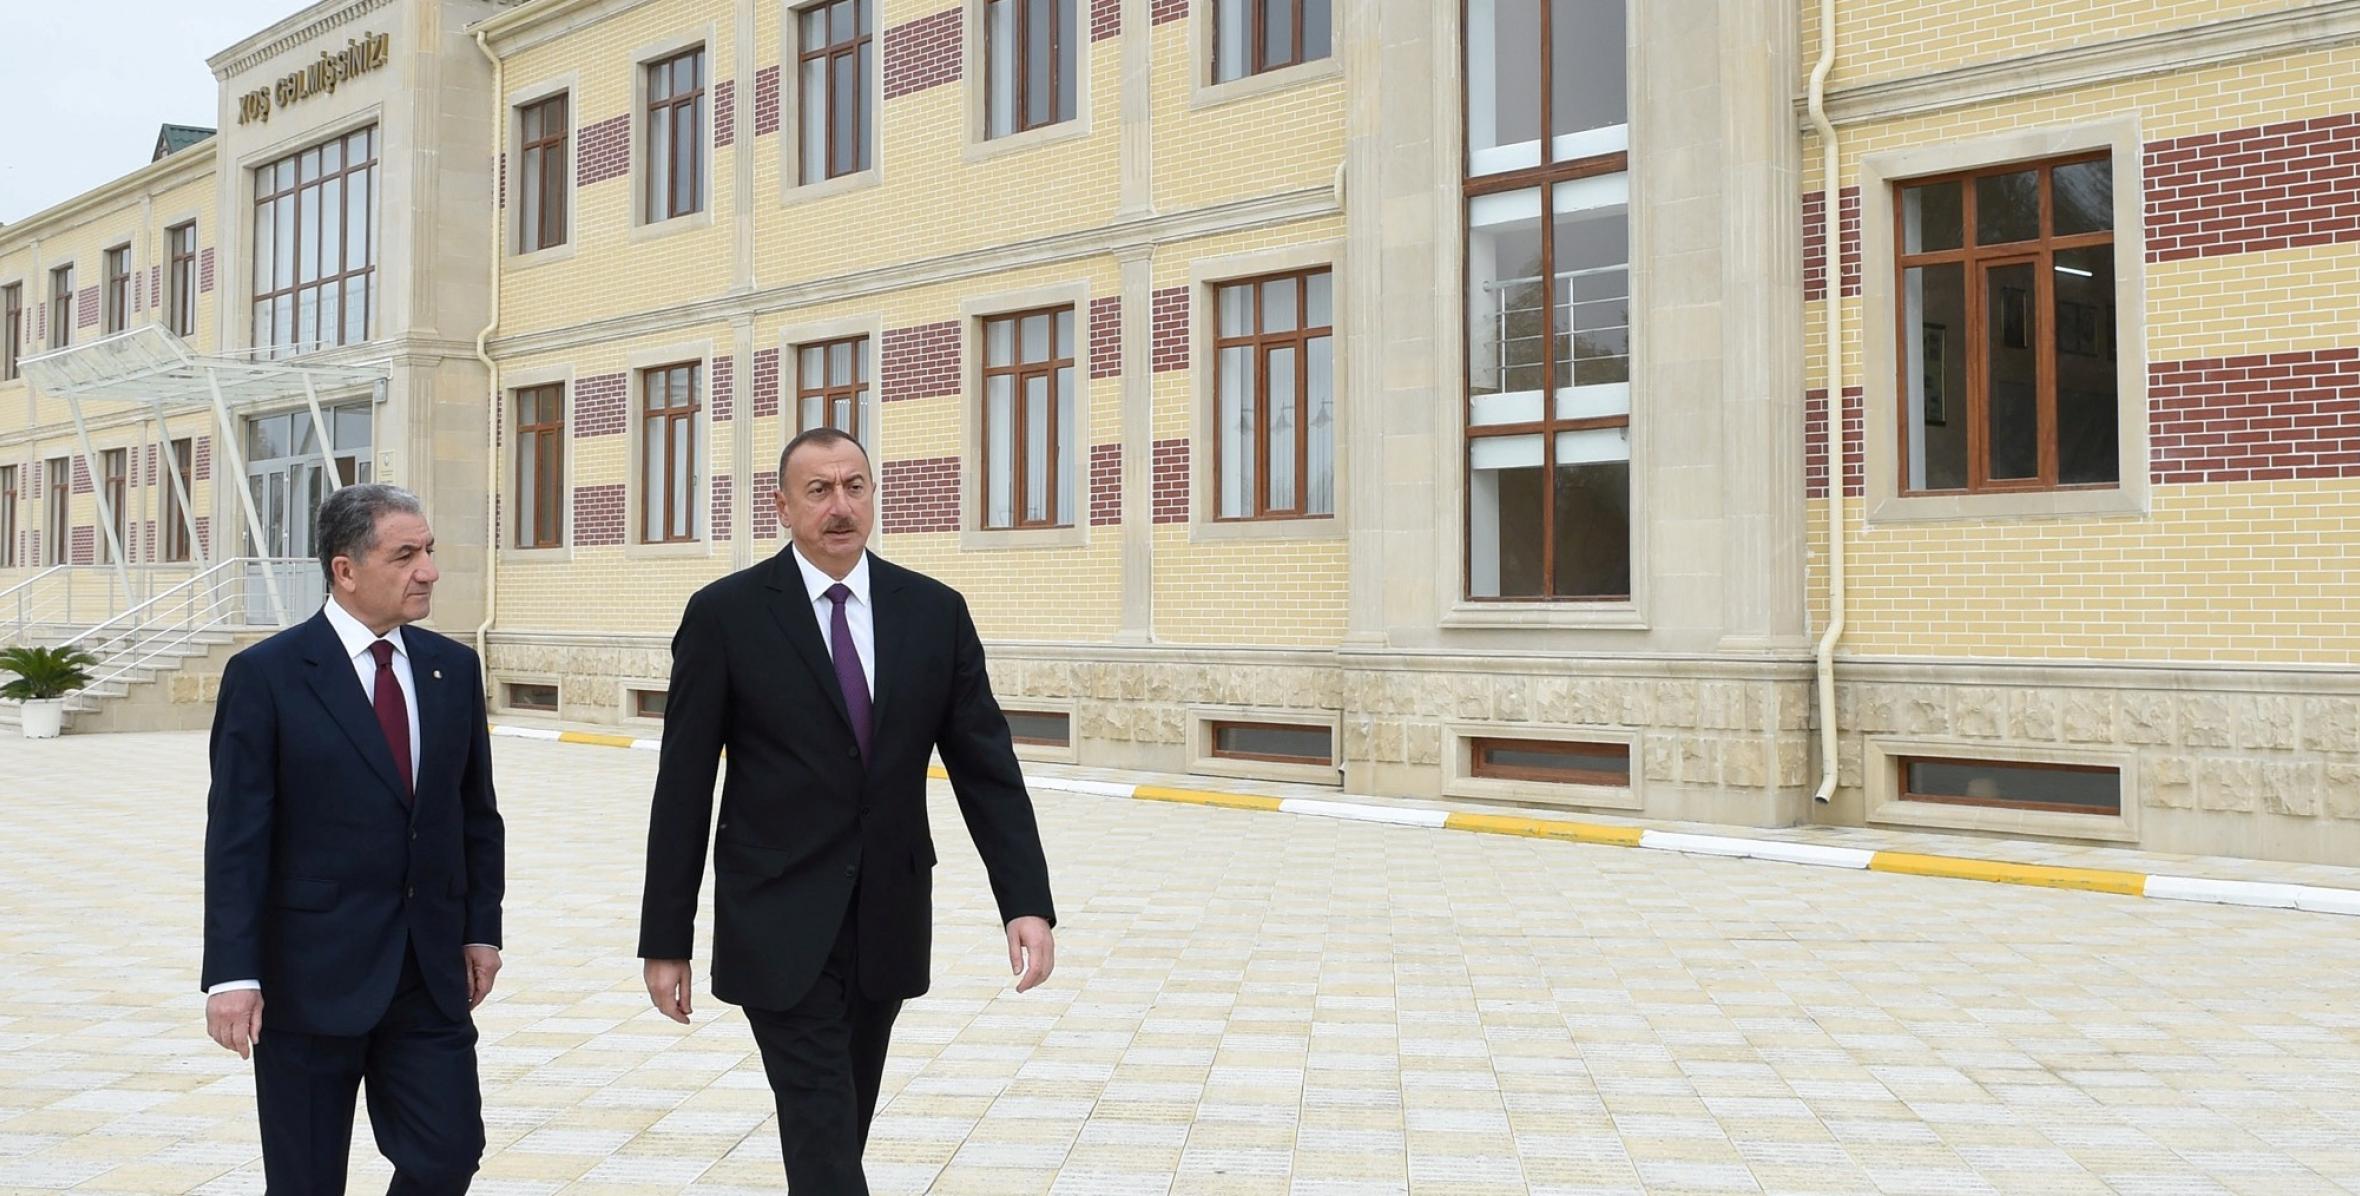 Ильхам Алиев принял участие в открытии здания Бейляганской городской полной средней школы номер 8 на 240 ученических мест, построенной по инициативе Фонда Гейдара Алиева